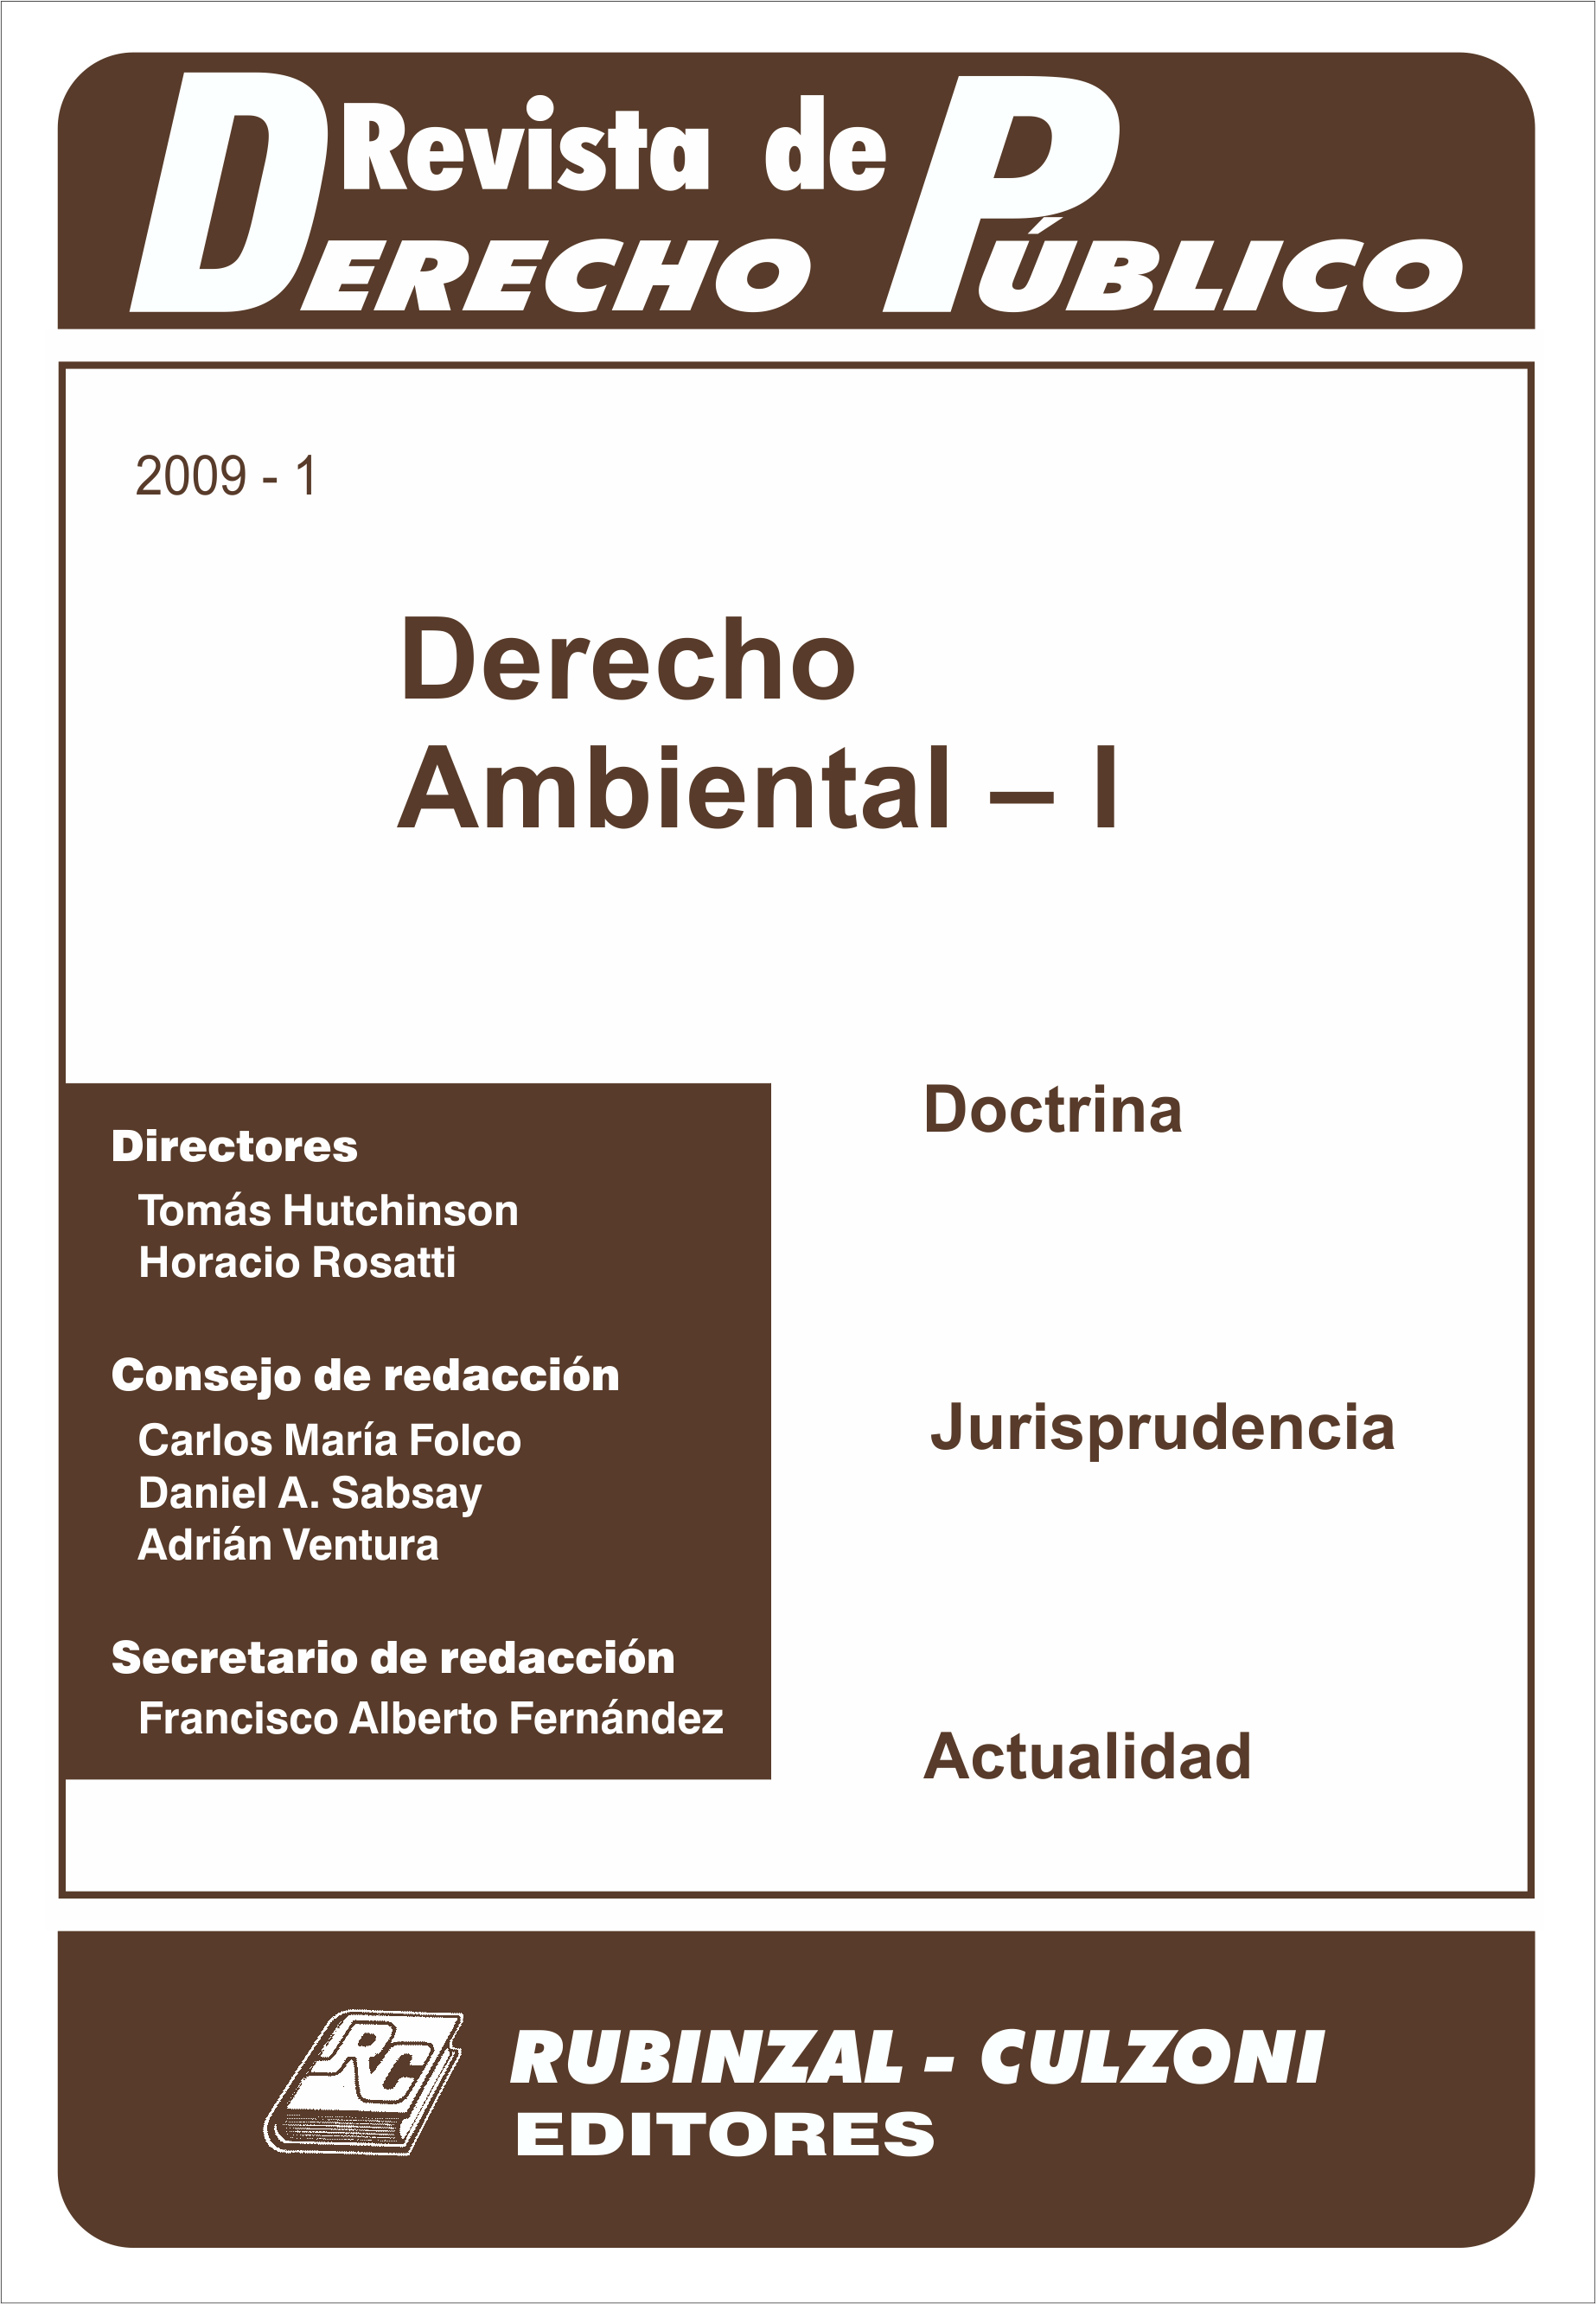 Revista de Derecho Público - Derecho Ambiental - I.